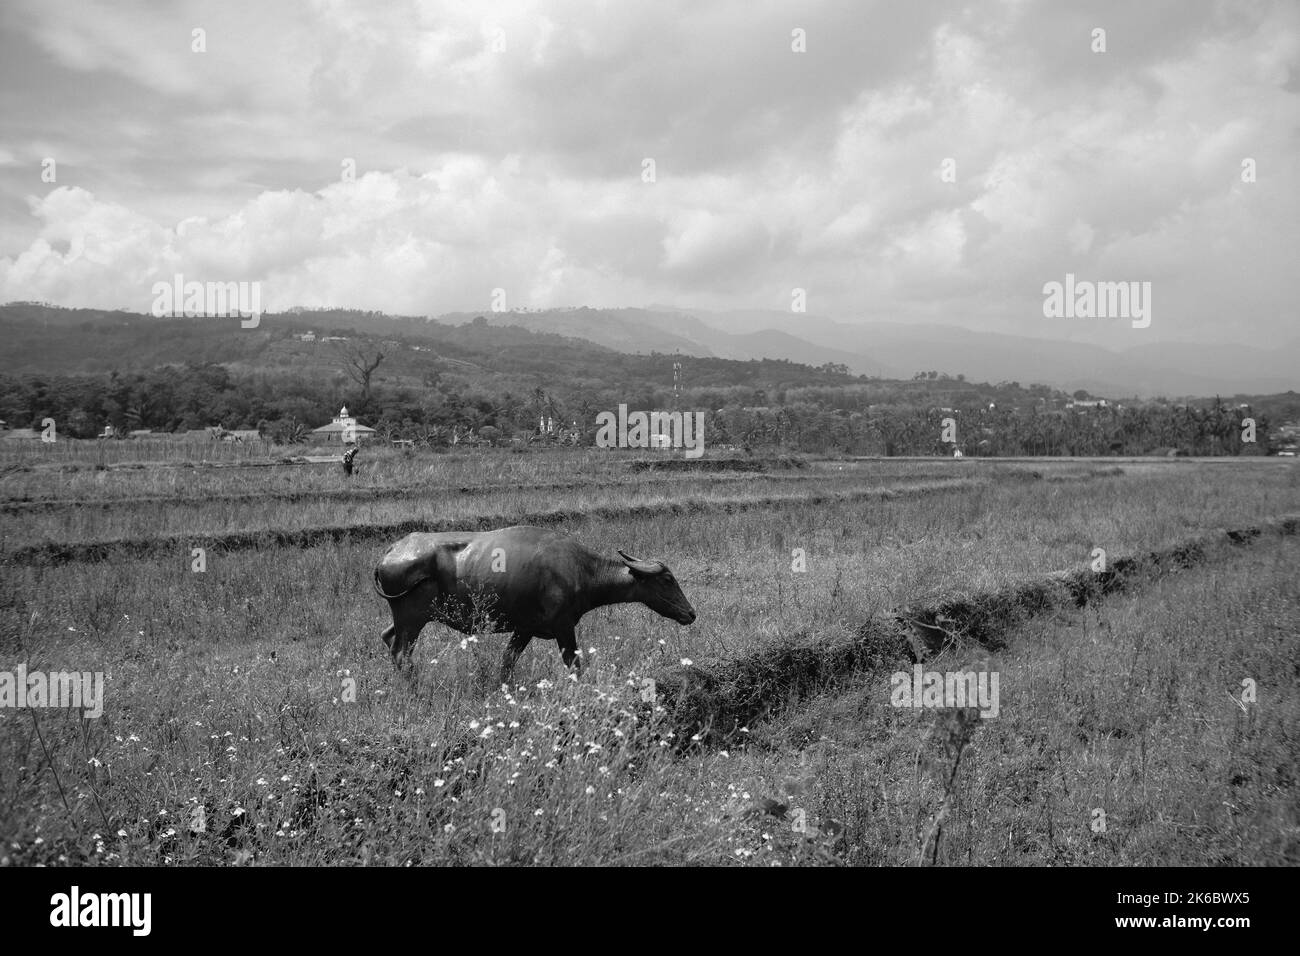 Monochromes Foto, Ein Büffel, der mitten in einem Reisfeld herumstreift, Cikancung - Indonesien Stockfoto